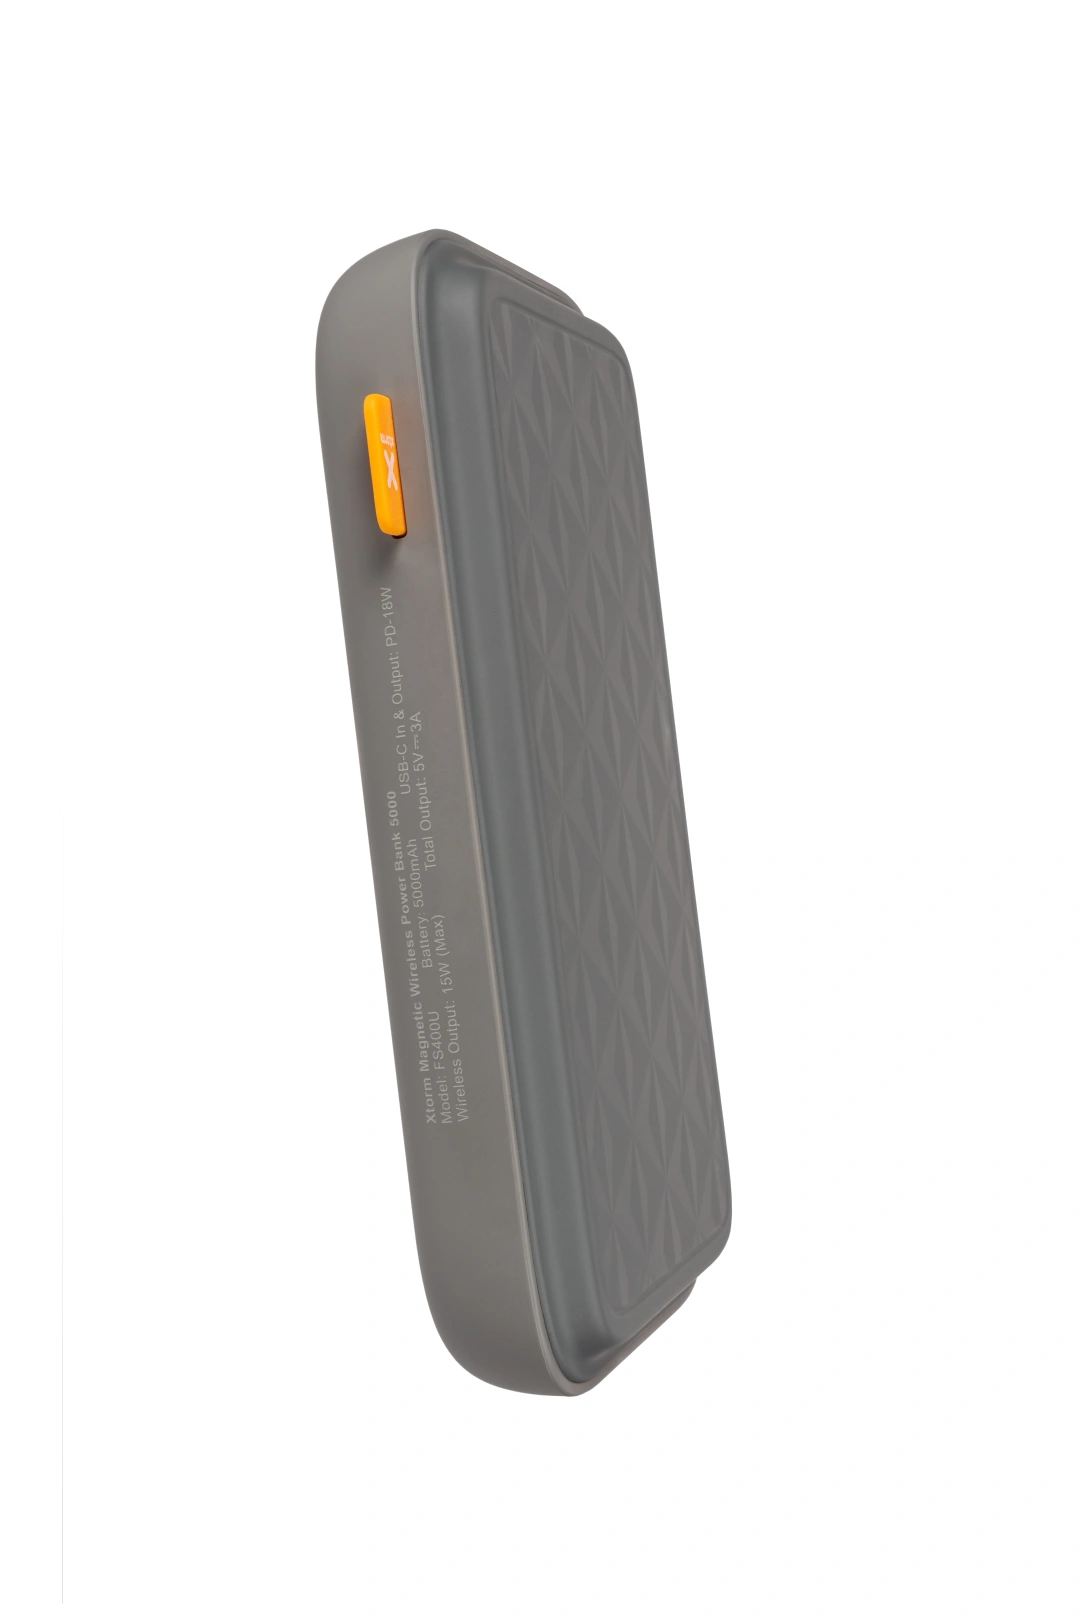 Powerbank Xtorm Magnetic Wireless 5 000mAh (FS400U) šedá